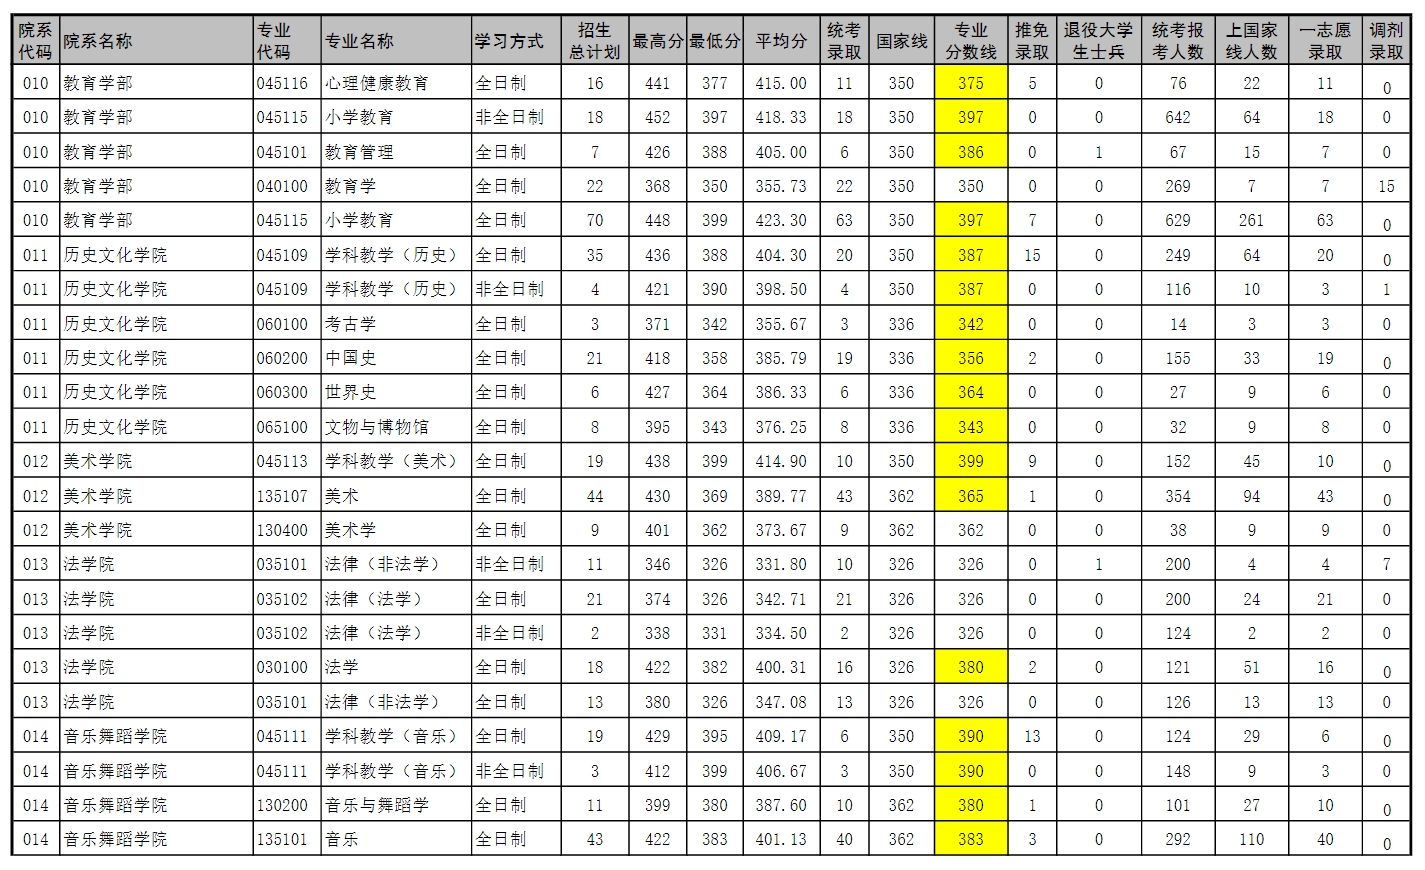 河南师范大学2023年硕士研究生录取情况统计